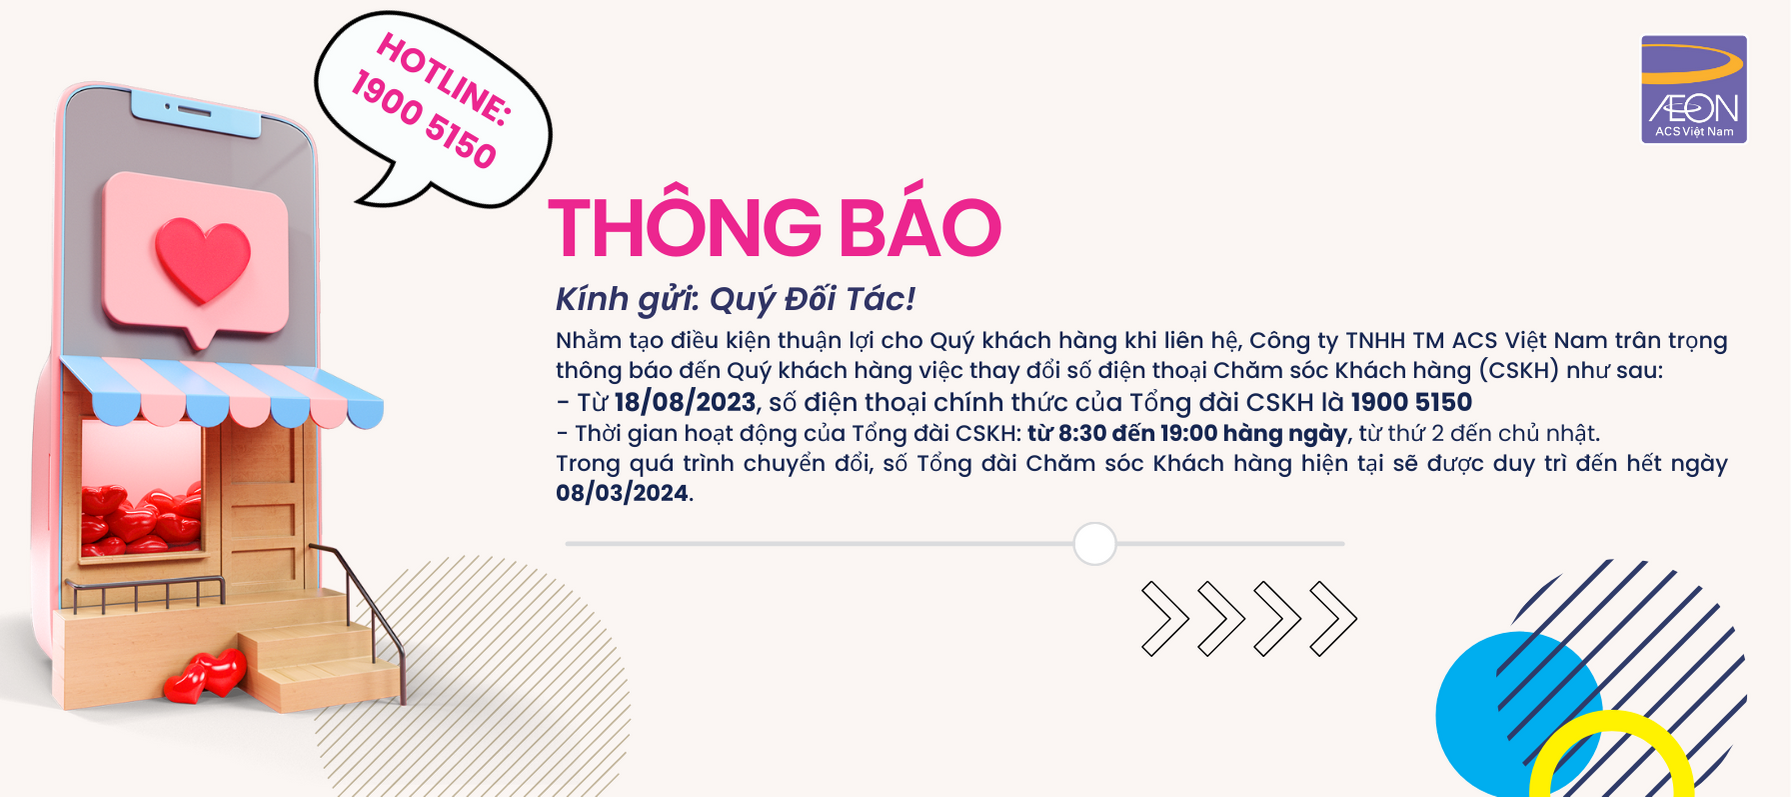 Thông báo thay đổi số điện thoại chính thức của Tổng đài CSKH ACS Việt Nam